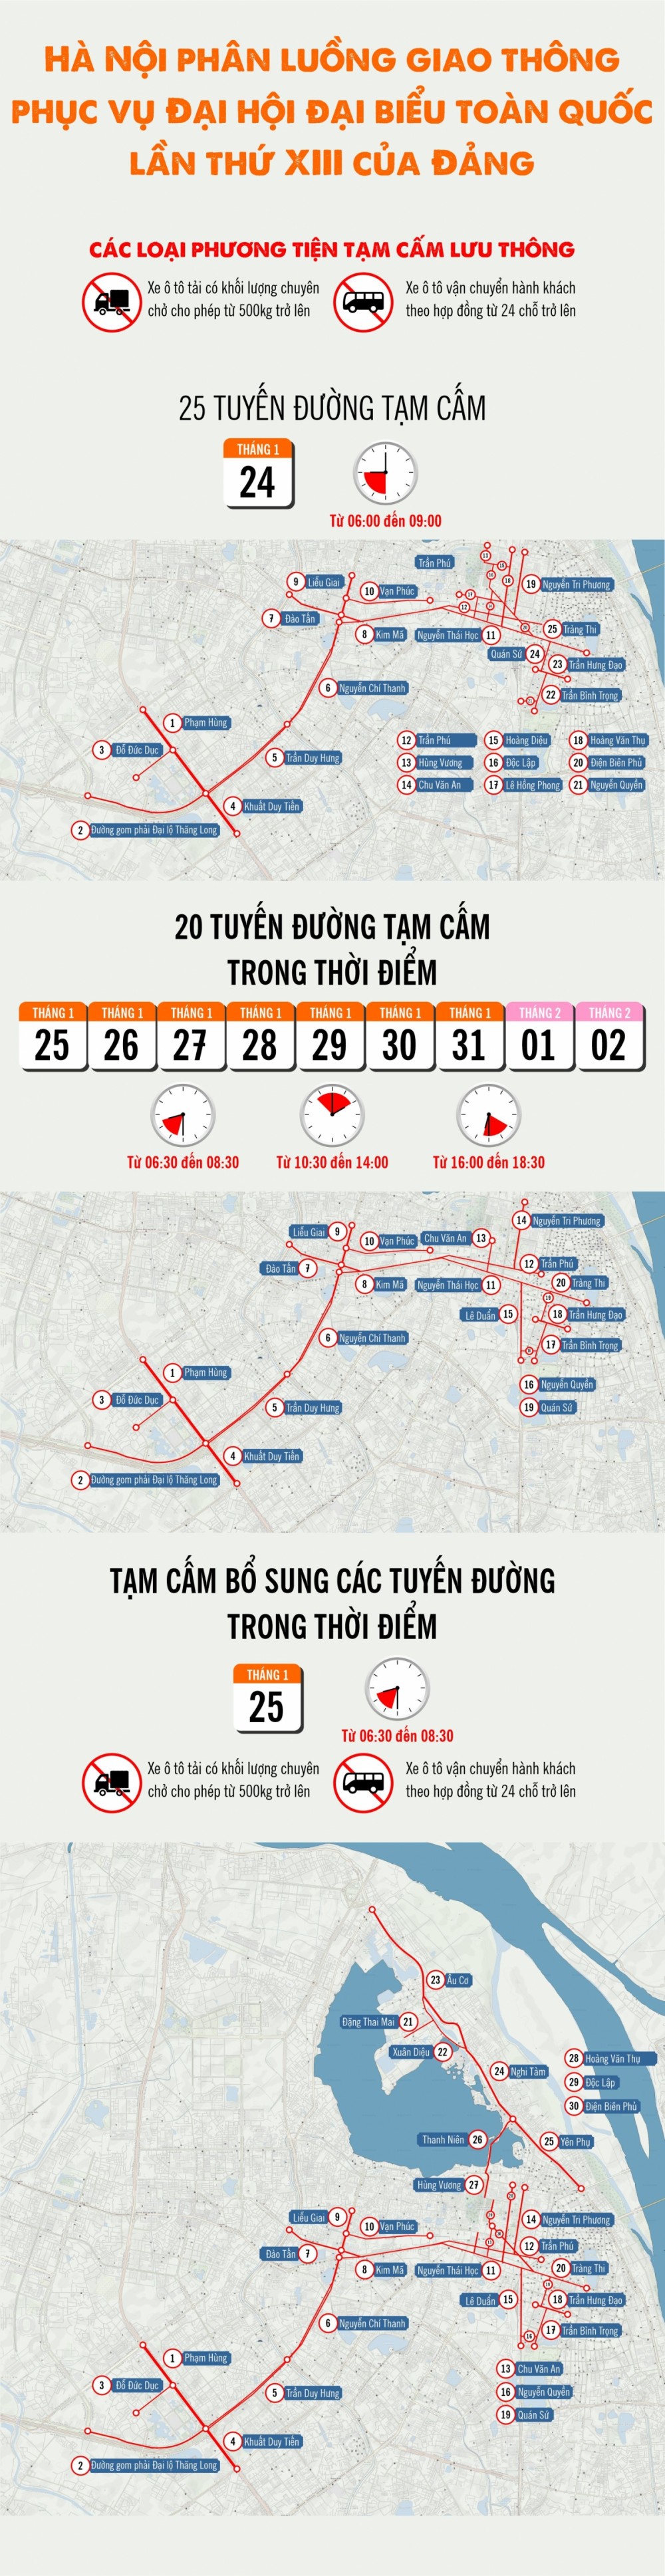 Infographic: Các phương tiện giao thông điều hướng như thế nào trong dịp Đại hội Đảng lần thứ XIII?